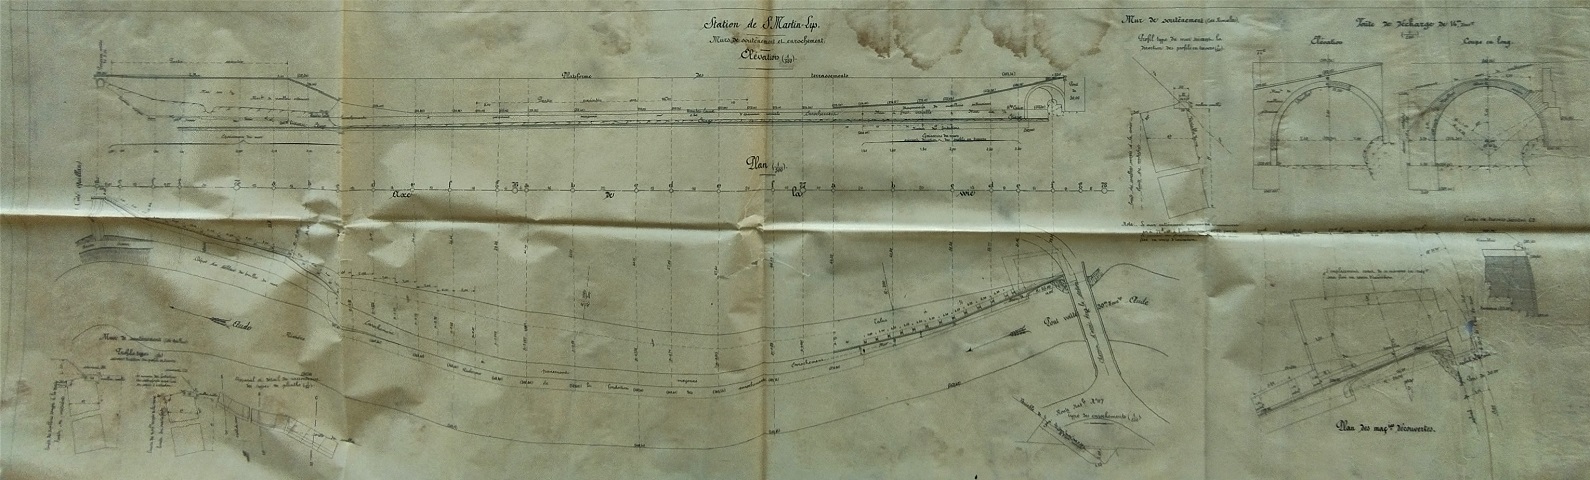 Plan sur la Station de Saint Martin Lys - mur soutainement et enrochement - général